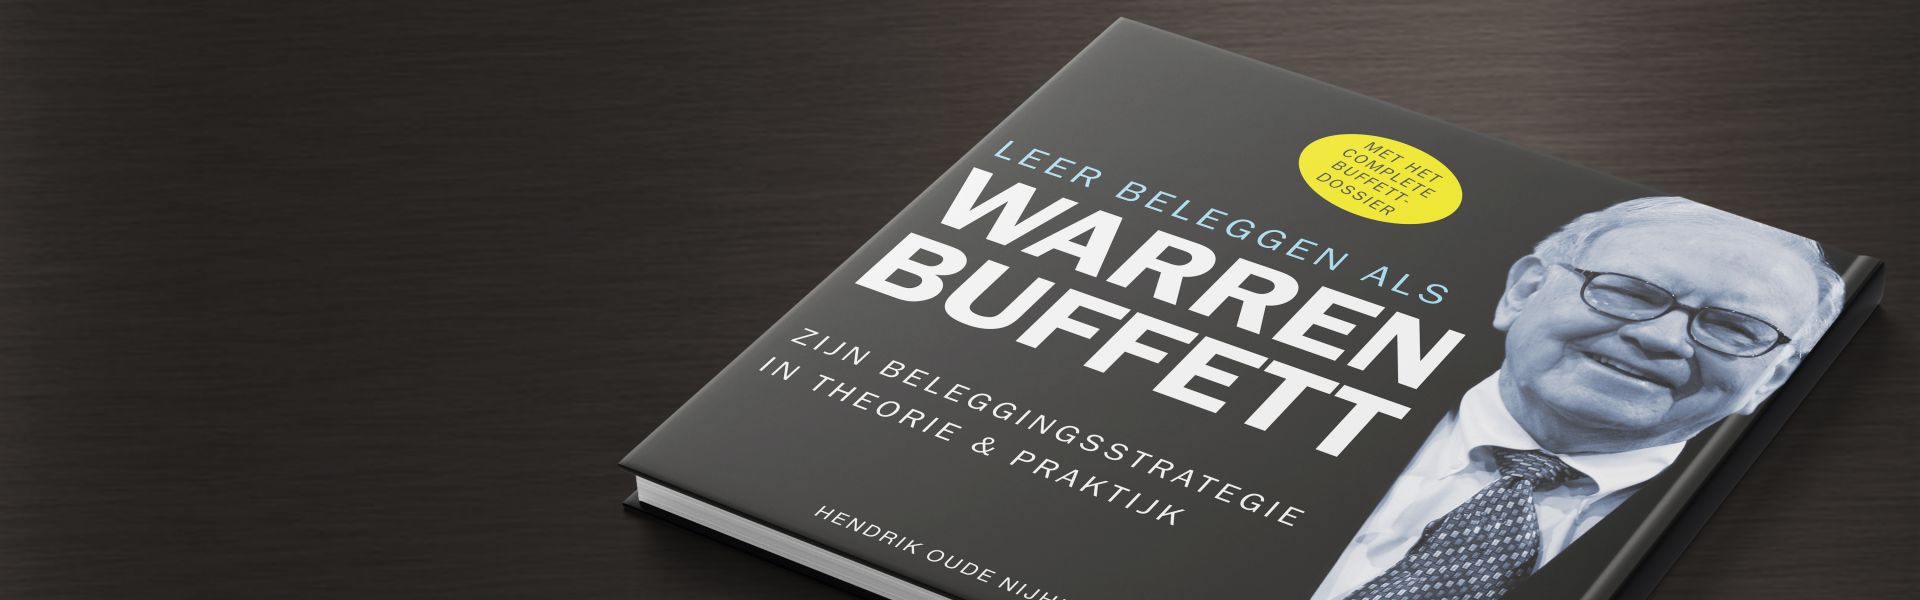 Leer beleggen als Warren Buffett: zijn beleggingsstrategie in theorie en praktijk